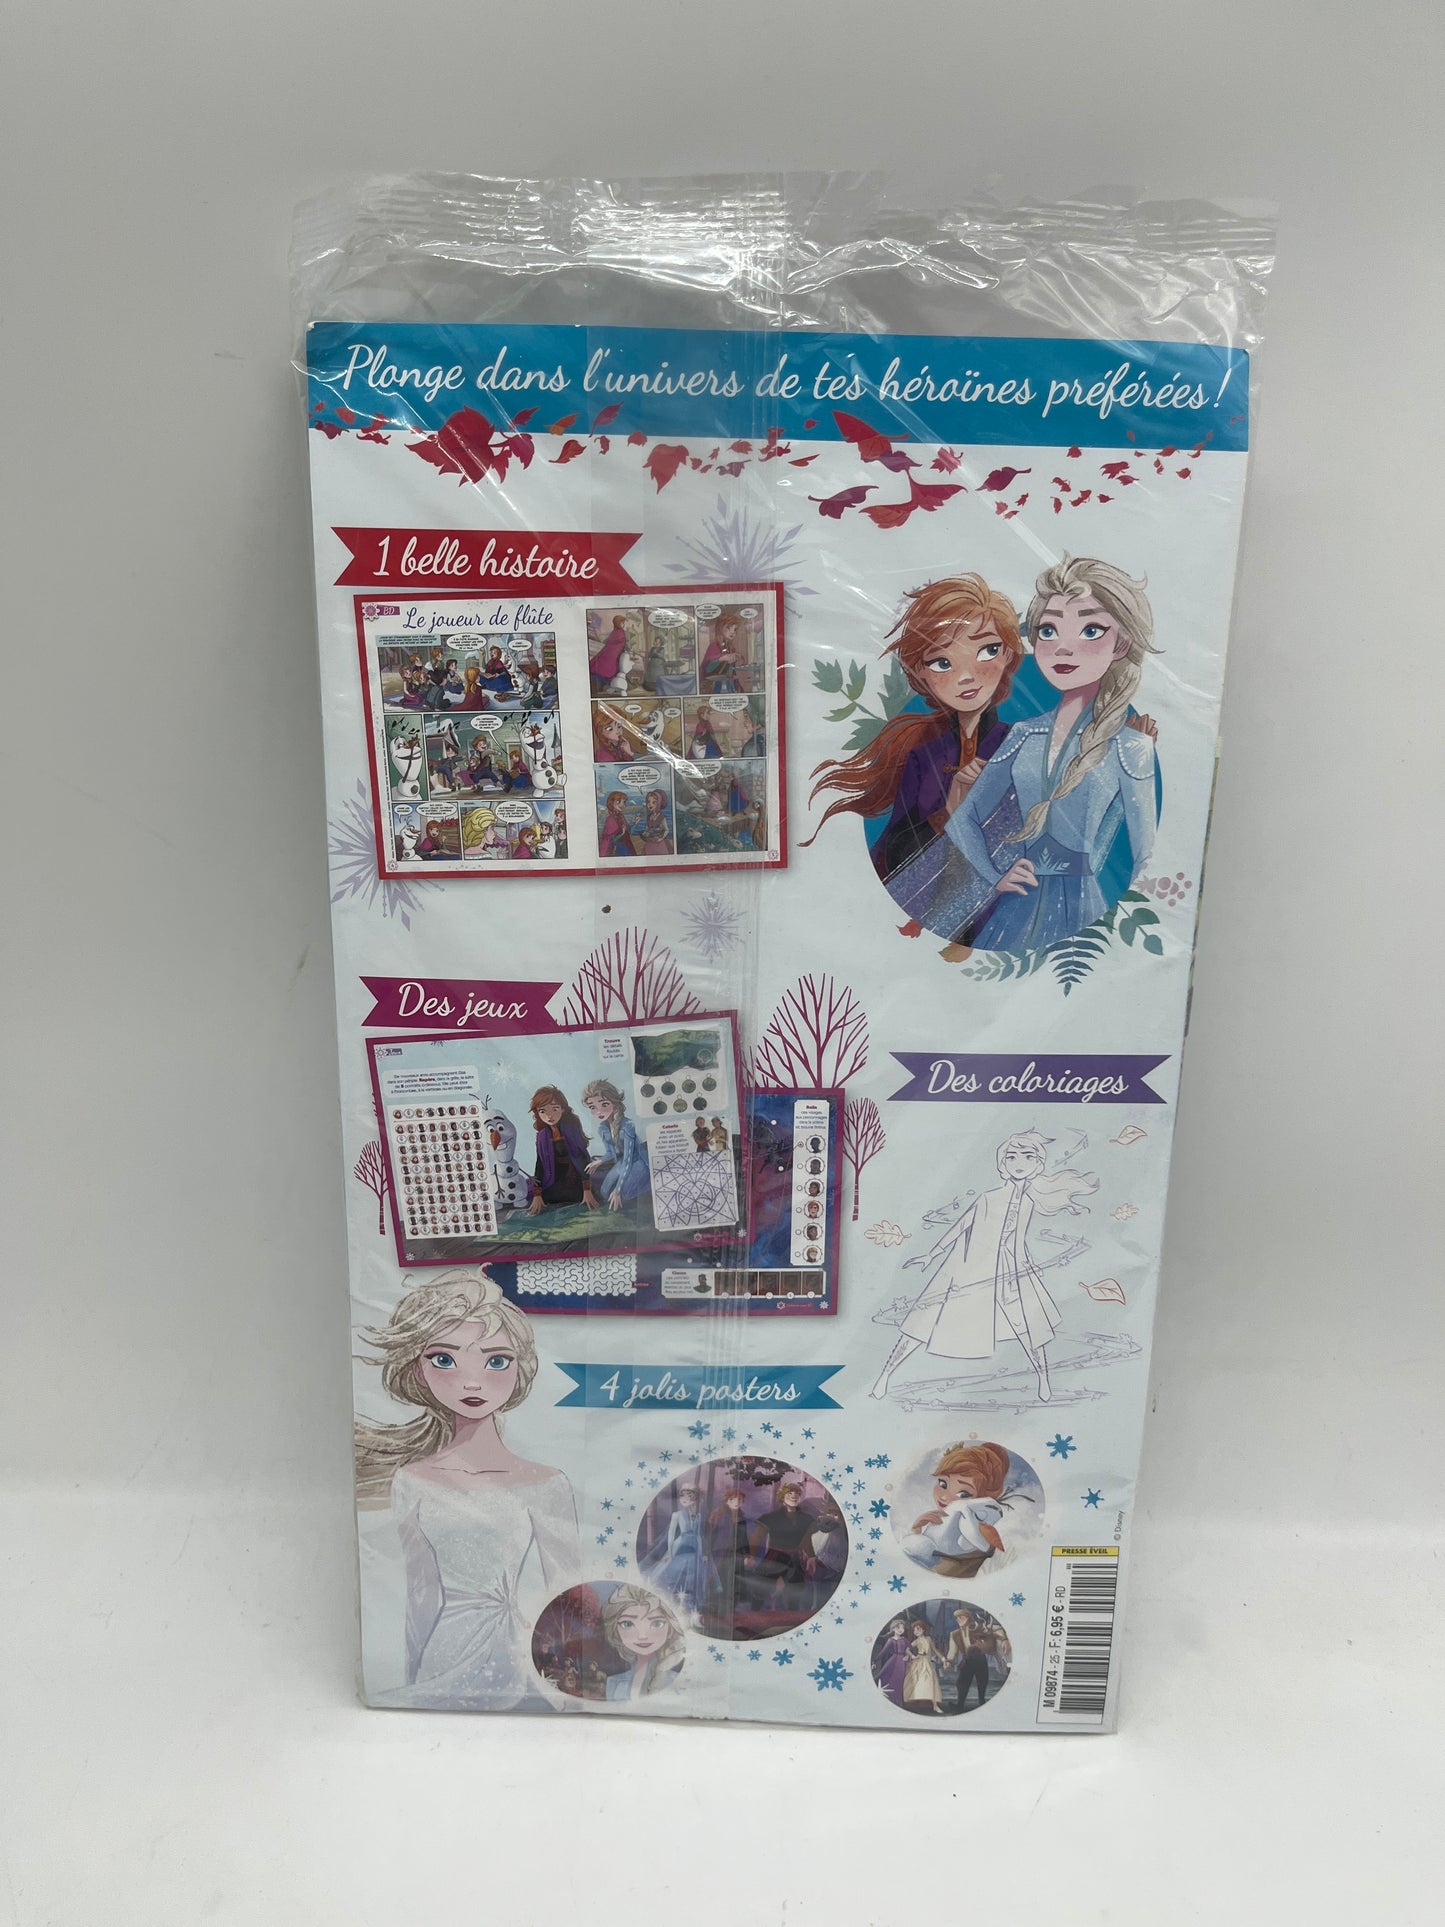 Livre d’activité Magazine Disney Princesse Reine des neige avec son Kit de danse neuf    Jeux activité stickers etc ...  Prix boutique:6 €99